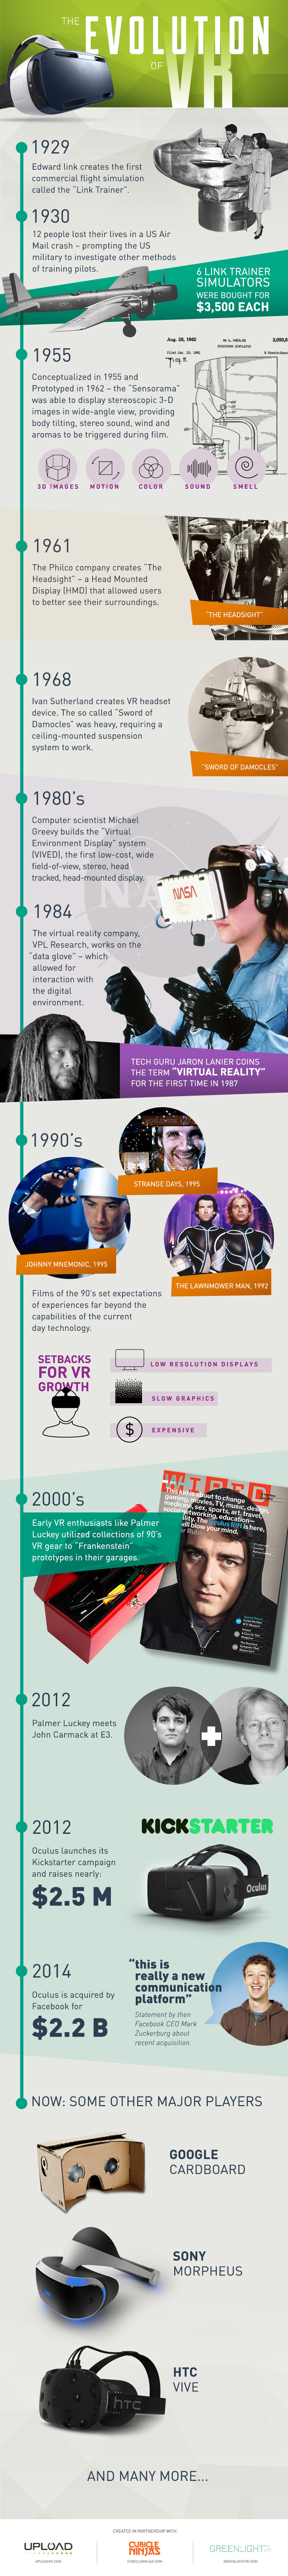 History-of-VR-uploadvr-cubicle-ninjas-greenlight-vr